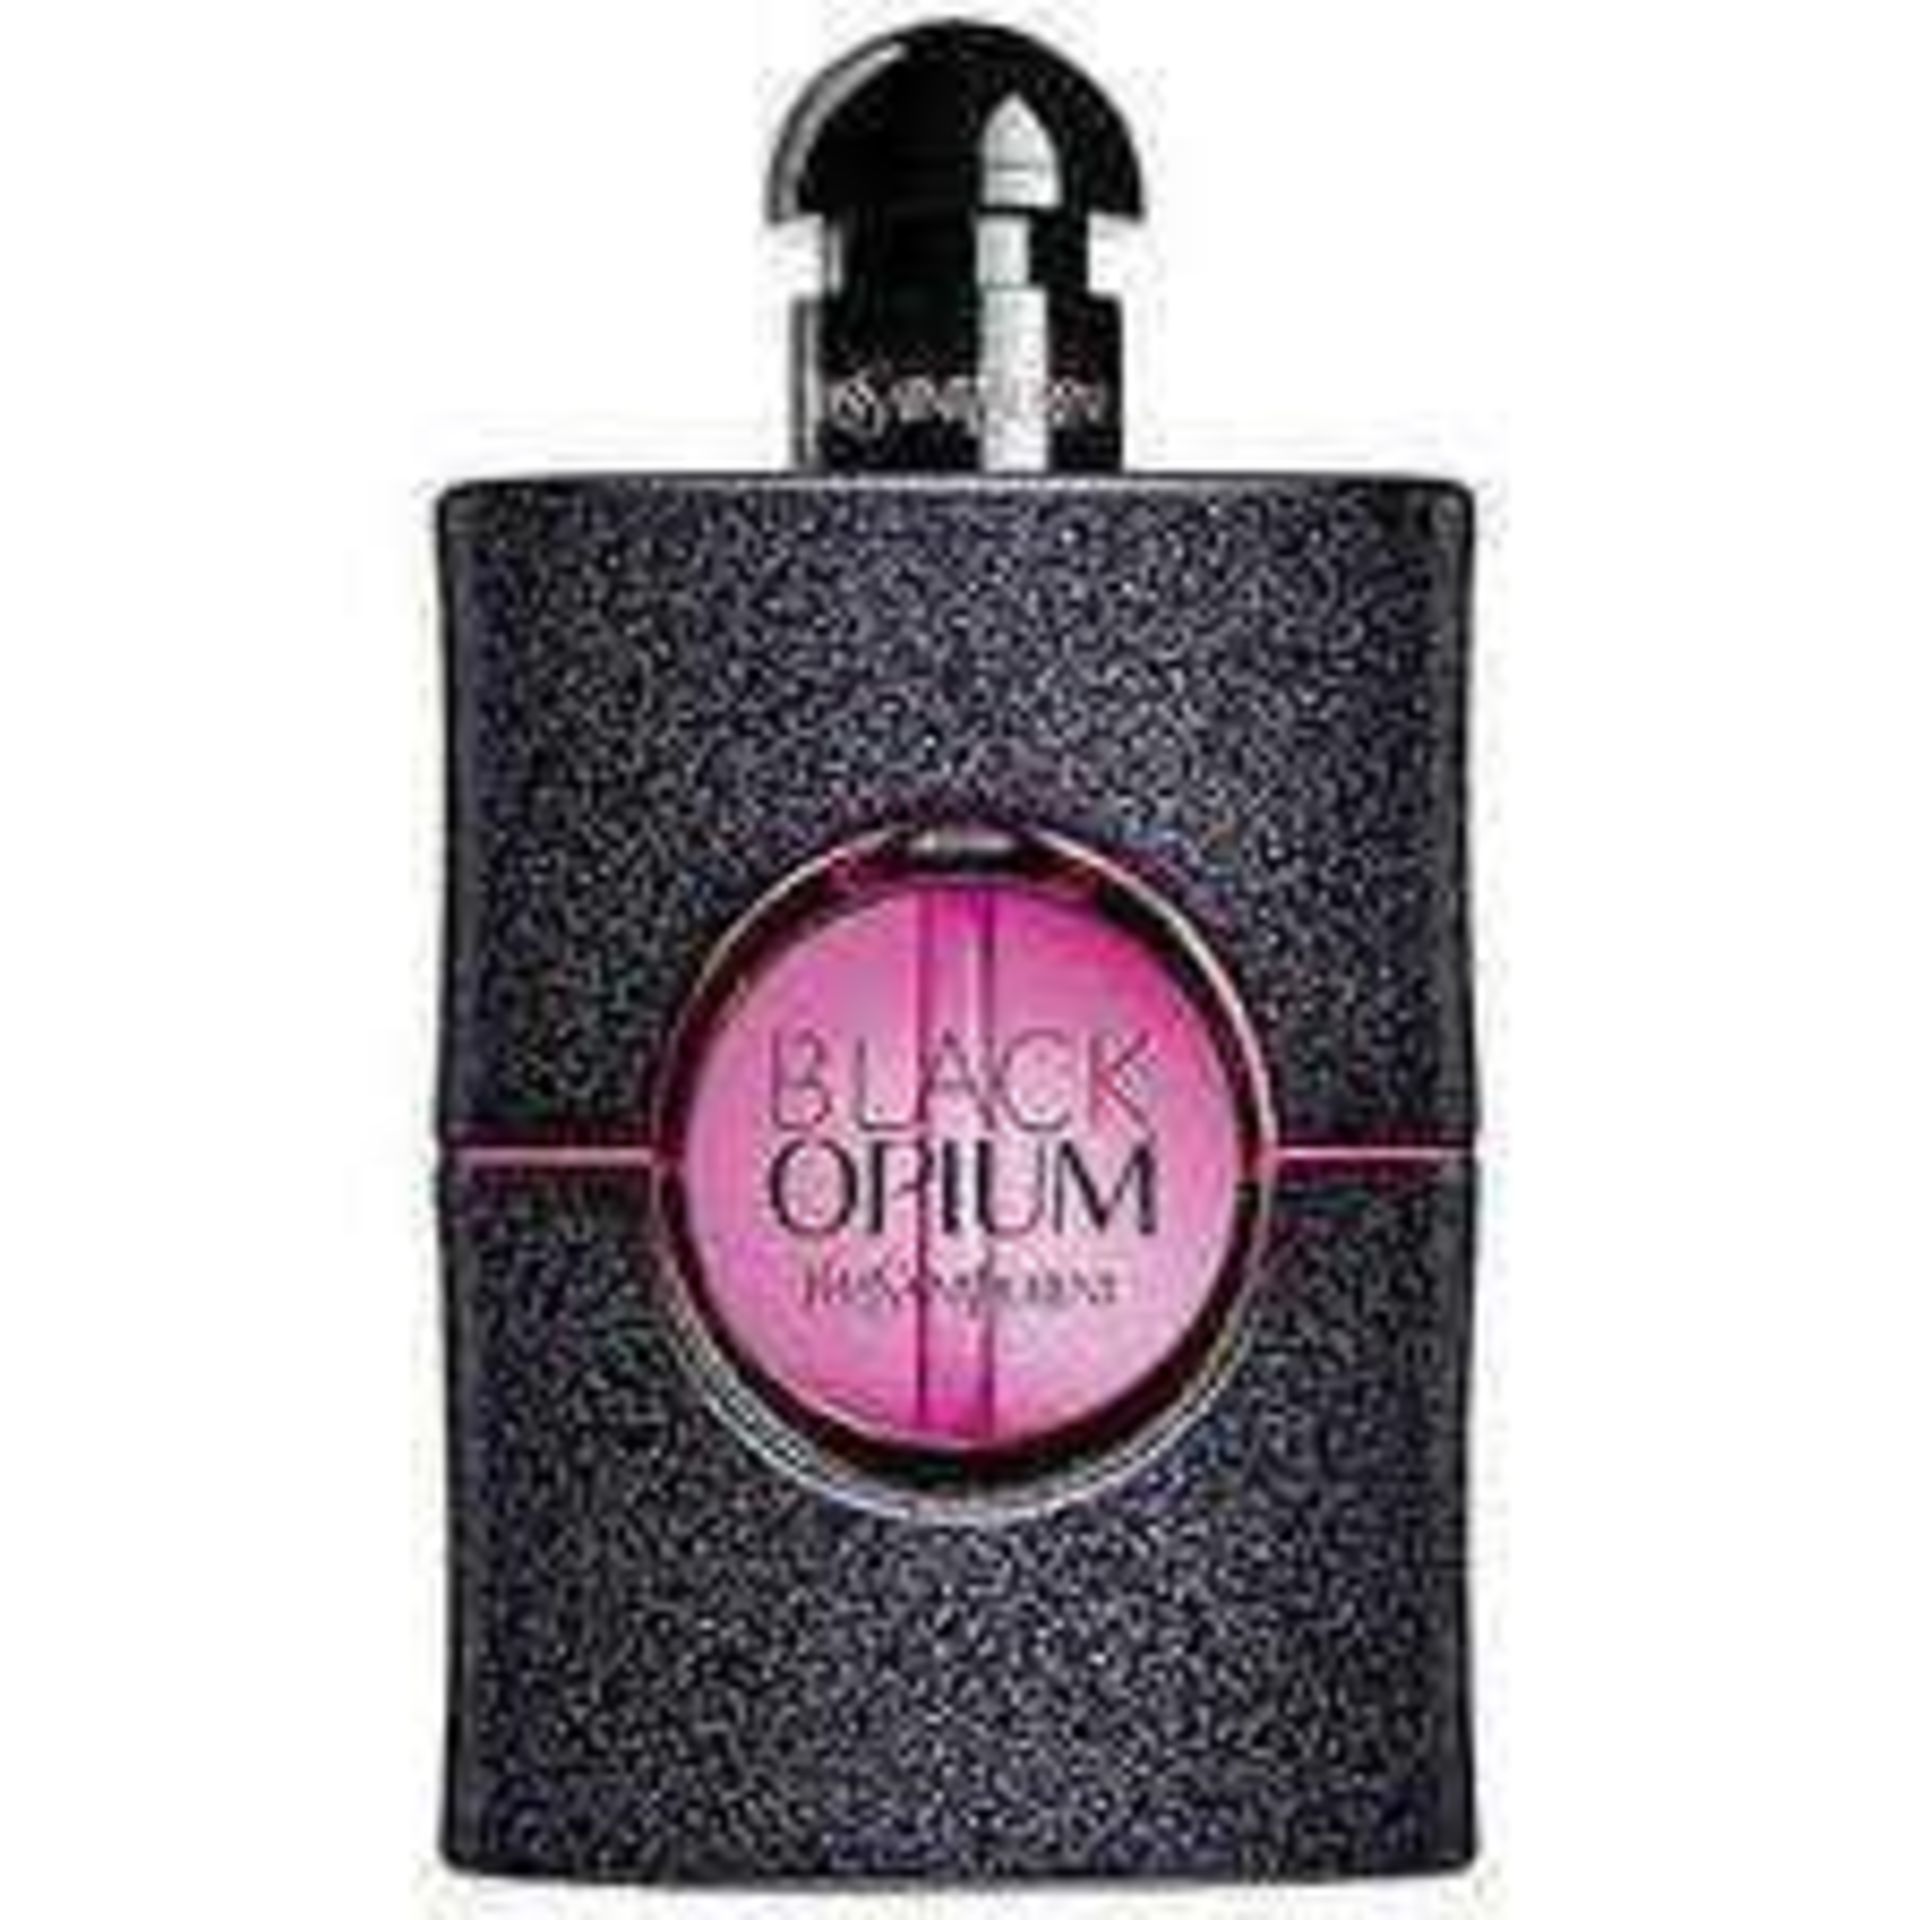 RRP £85 Unboxed Yves Saint Laurent Black Opium Neon Perfume 75Ml Ex Display